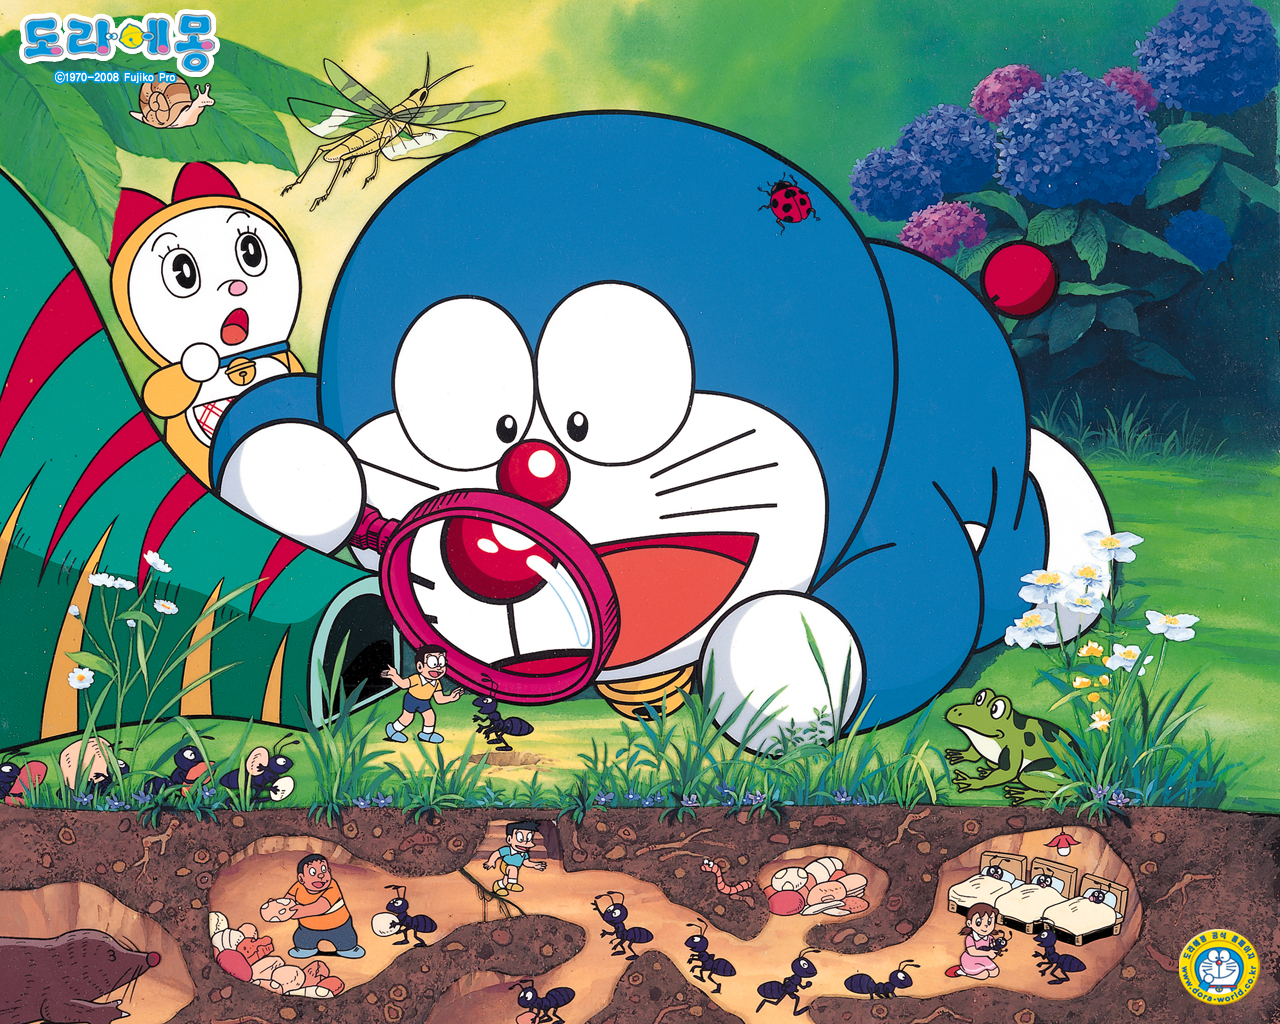 Nếu bạn yêu thích Doraemon, bạn không thể bỏ qua hình ảnh của anh chàng này! Hãy xem xét chúng tôi đã tìm thấy hình ảnh ấn tượng và thú vị để đảm bảo bạn sẽ thích nó.